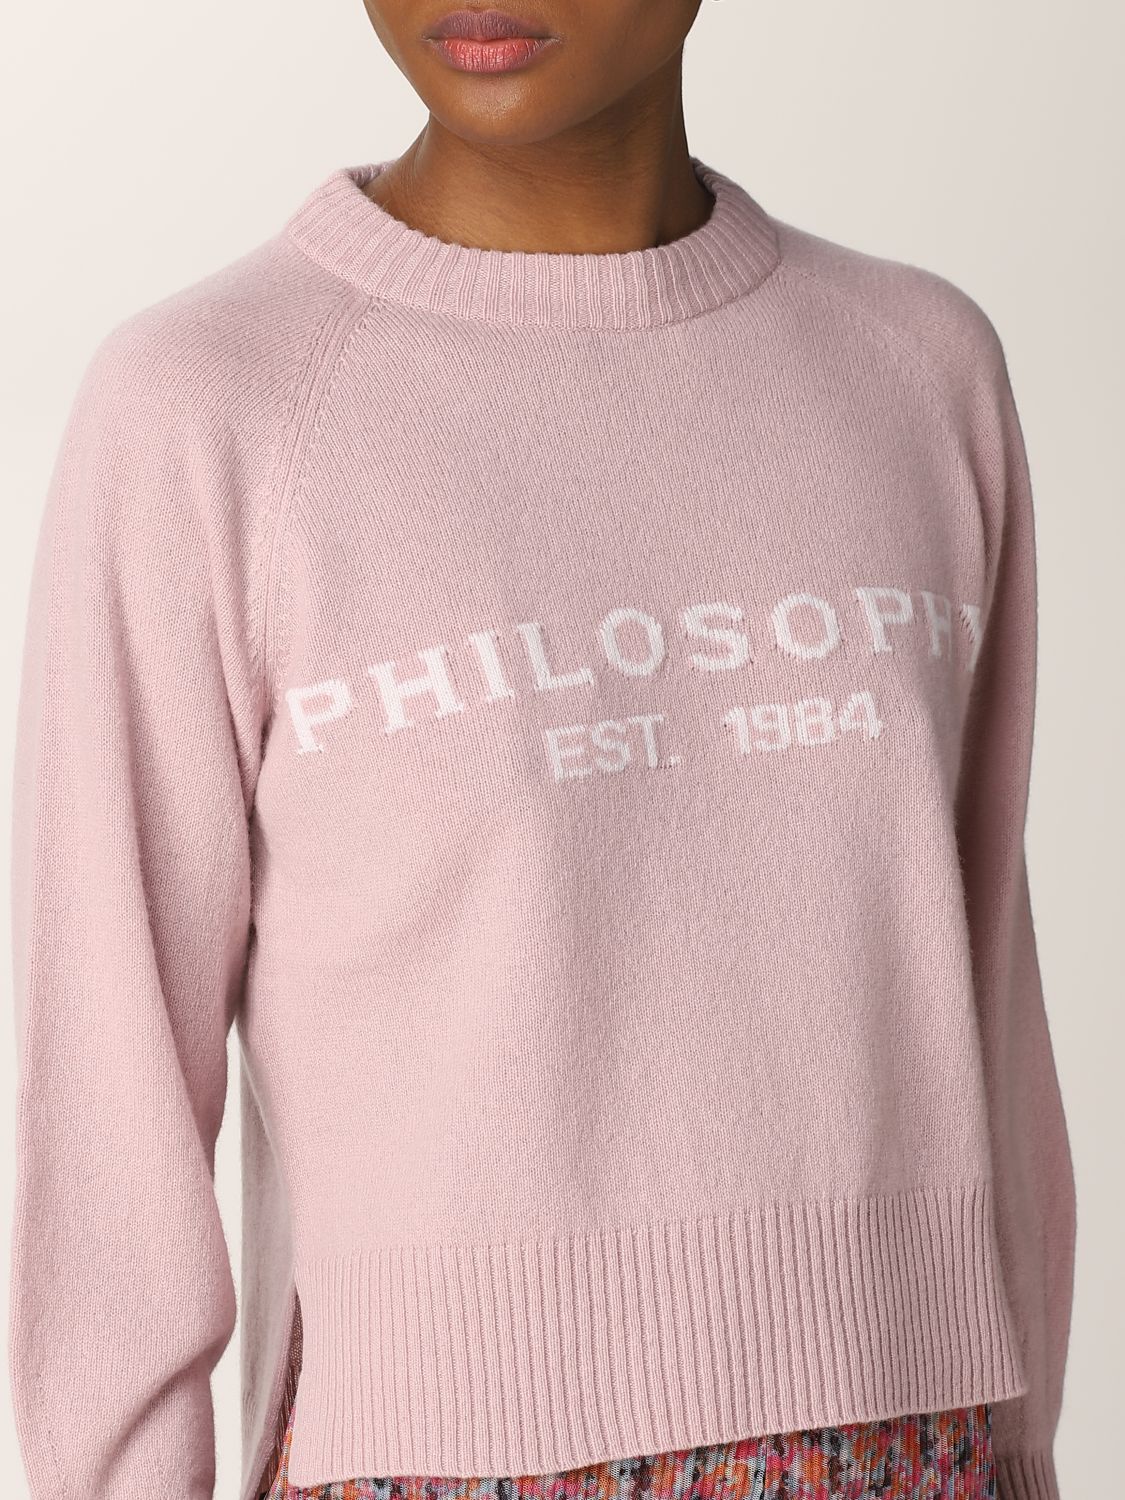 Sweater Philosophy Di Lorenzo Serafini: Philosophy Di Lorenzo Serafini sweater with logo pink 5